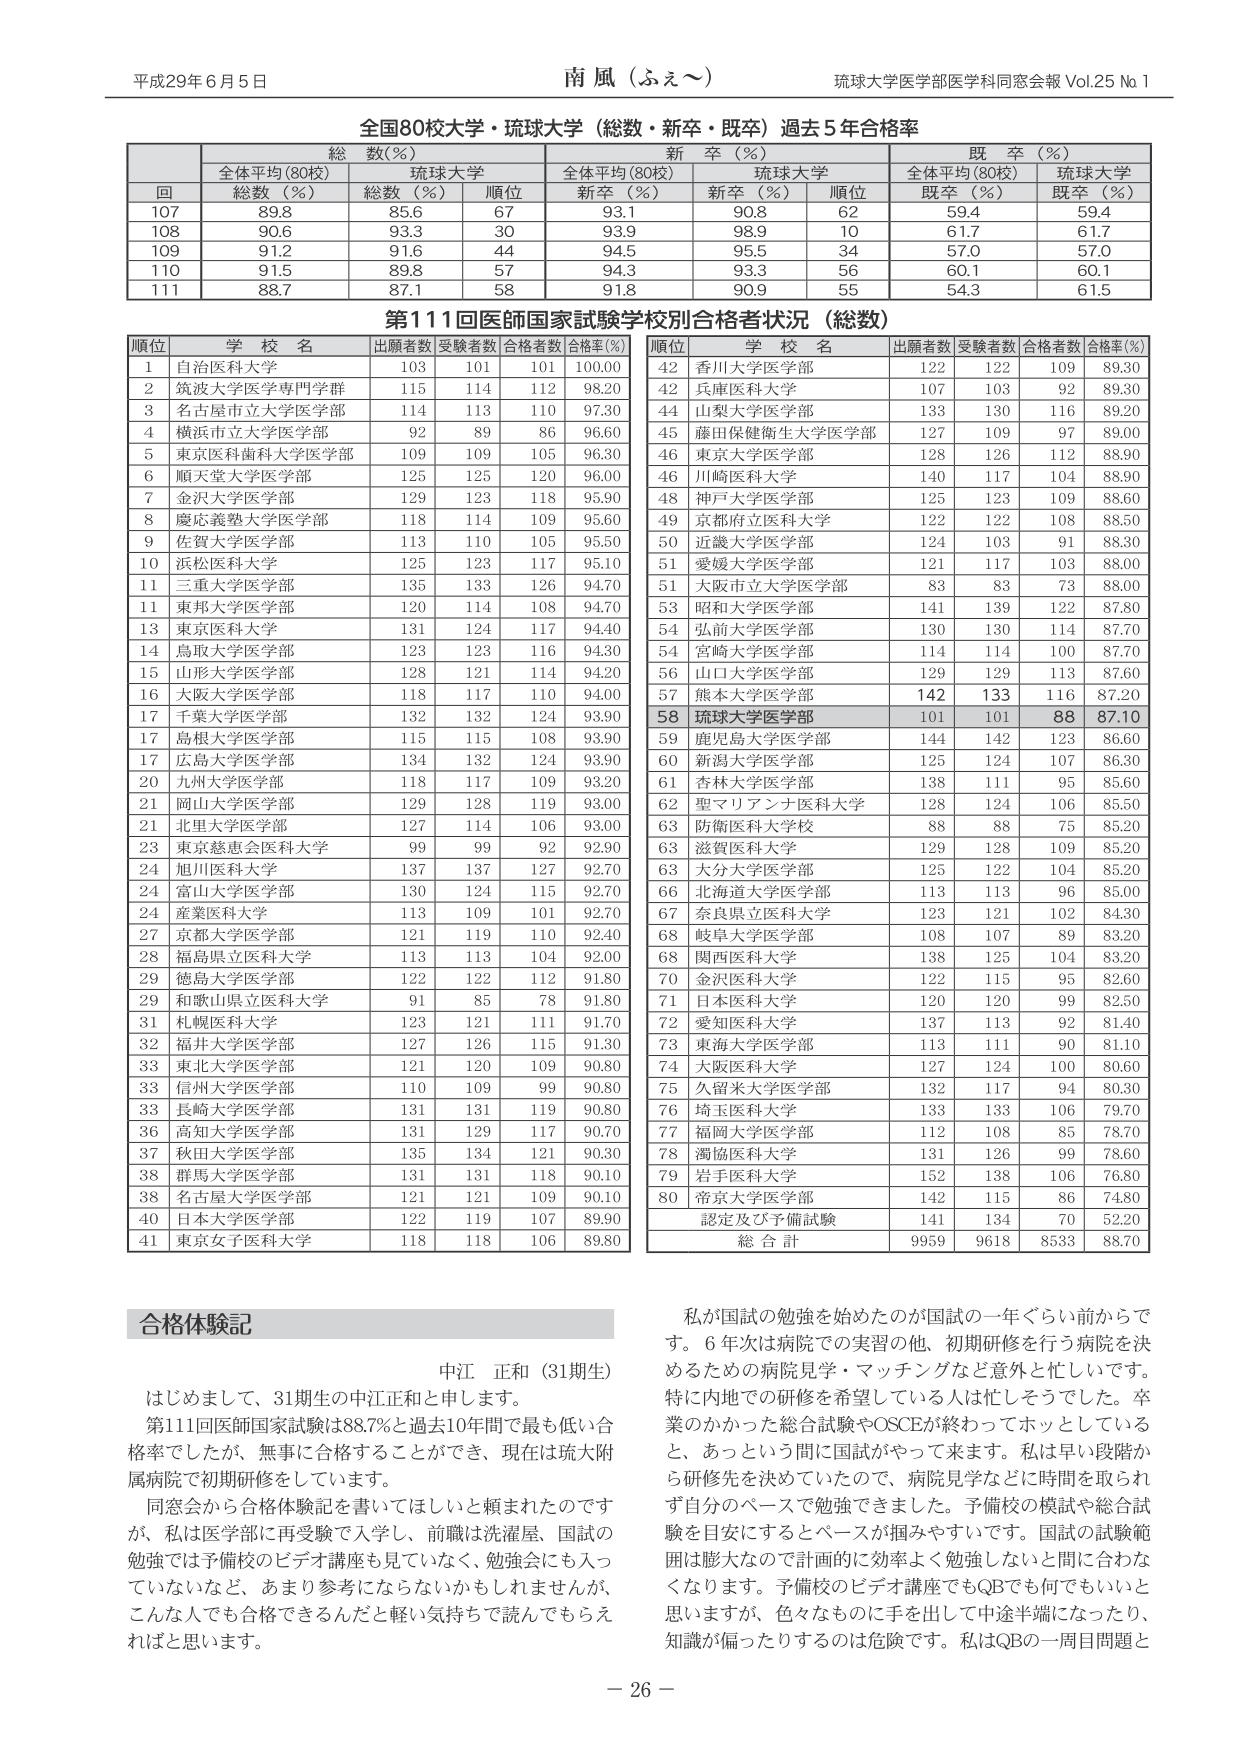 平成29年2月第111回医師国家試験 琉球大学の結果報告と変遷(2)